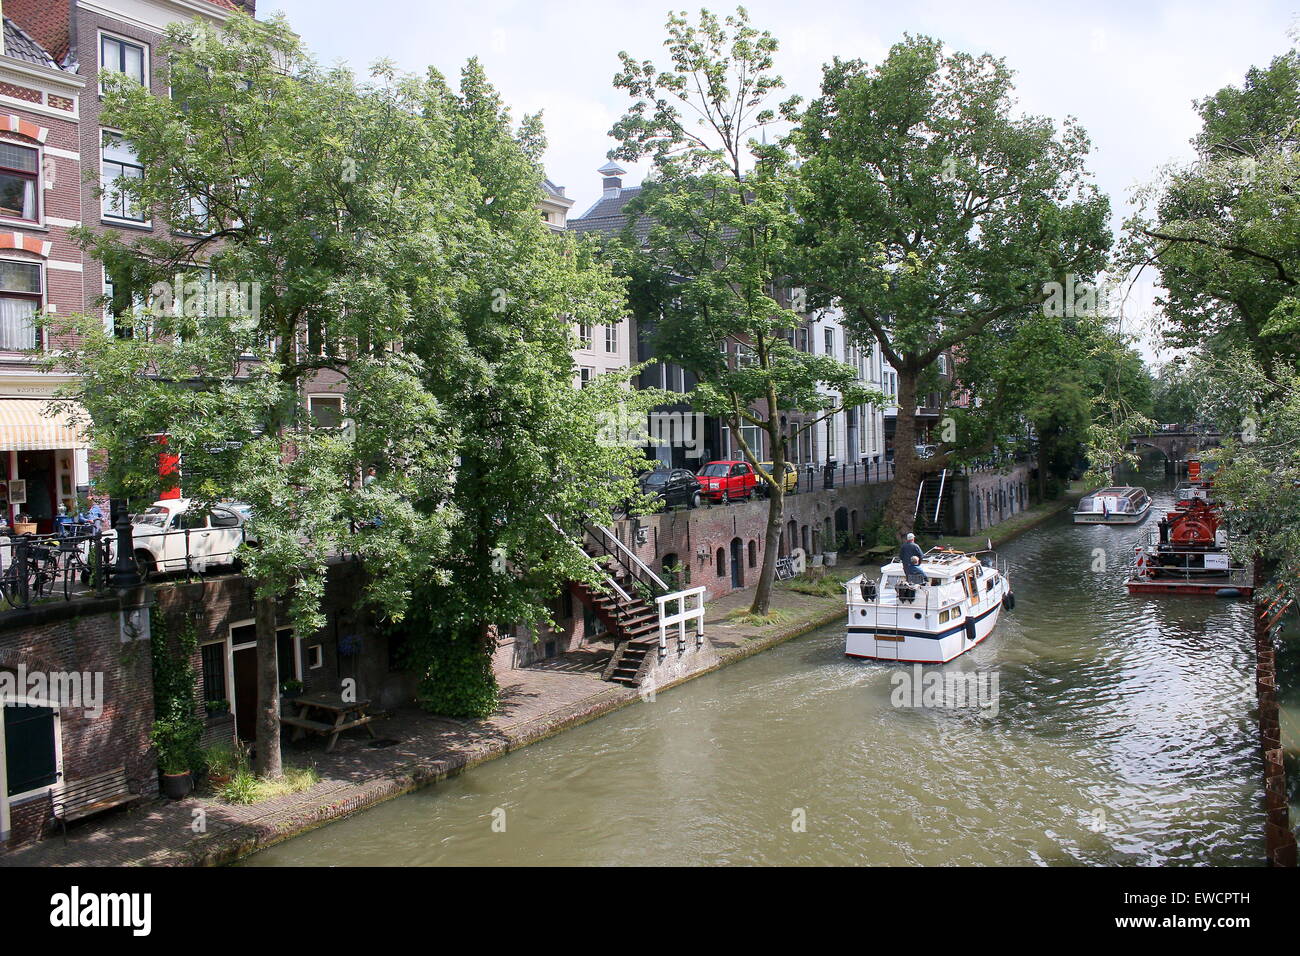 Boote am Oudegracht Kanal, einem schattigen Kanal mit alten abgesenkten Kais in der mittelalterlichen Innenstadt von Utrecht, Niederlande Stockfoto